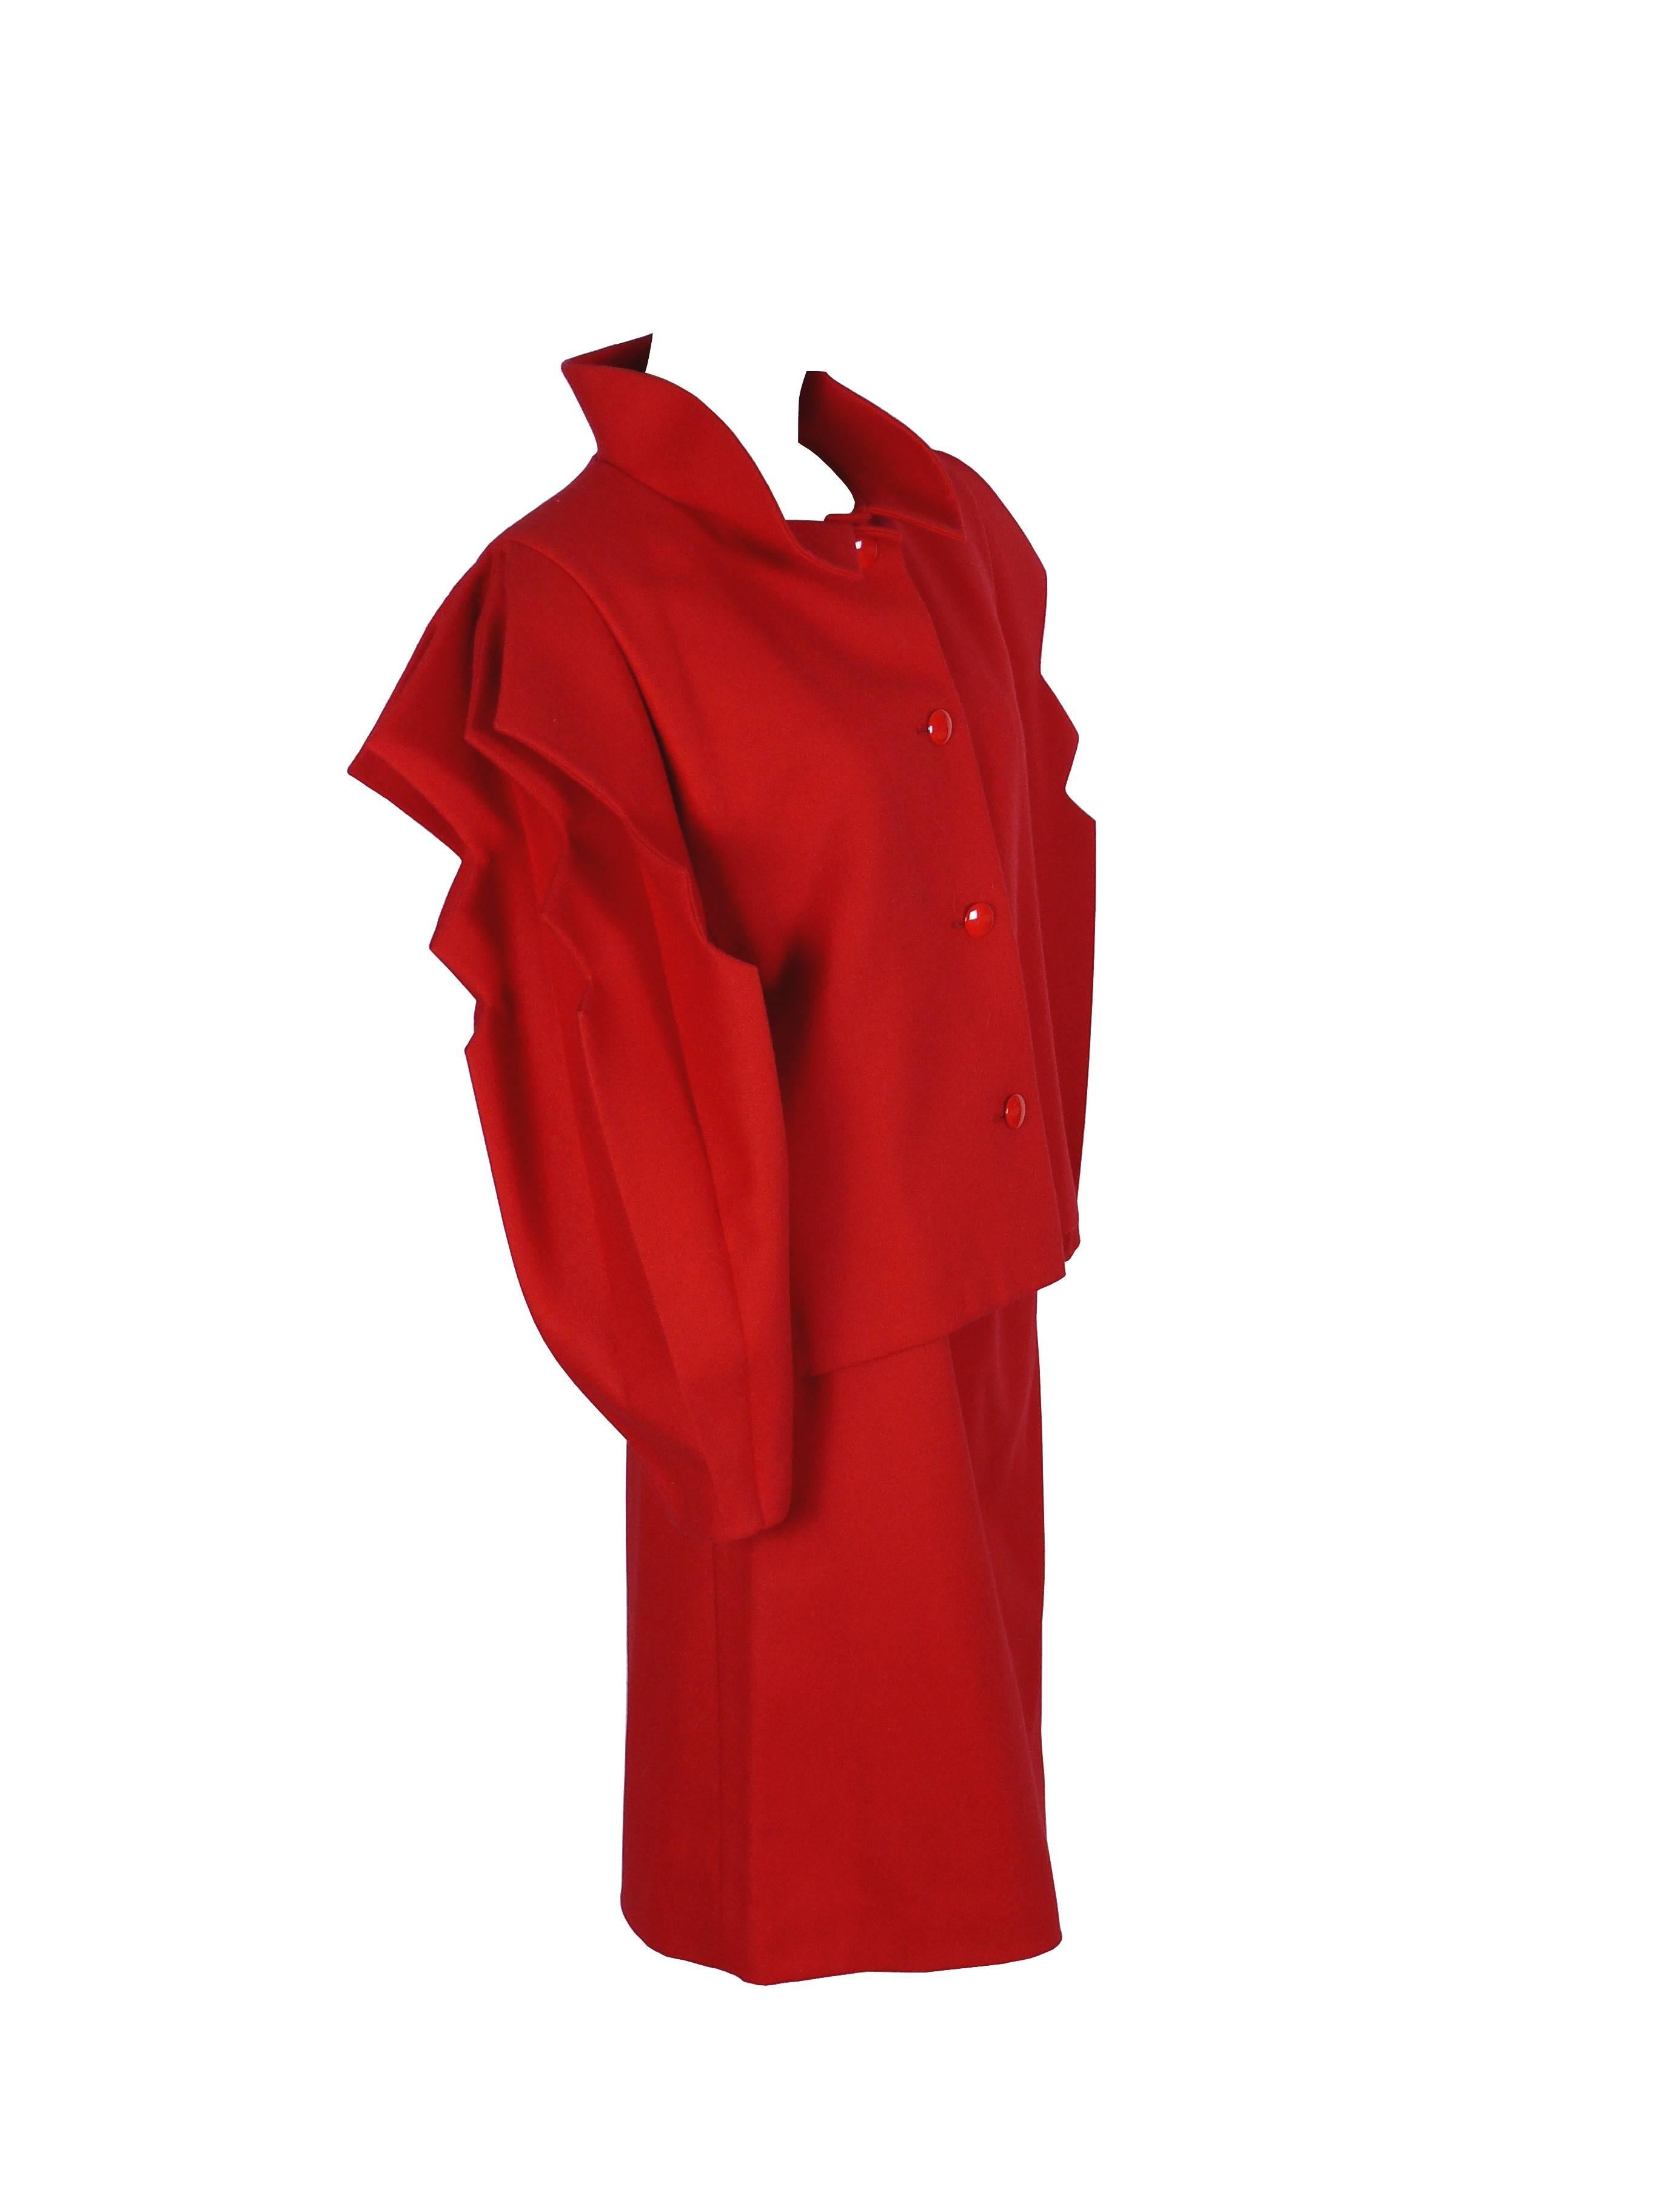 PIERRE CARDIN Prestige intage roter Rock Anzug.

Der Blazer hat atemberaubende ausgeschnittene Akkordeonärmel, einen steifen, umgeschlagenen Kragen und einen Knopfverschluss.

Gerader Rock mit Reißverschluss.

Sowohl die Jacke als auch der